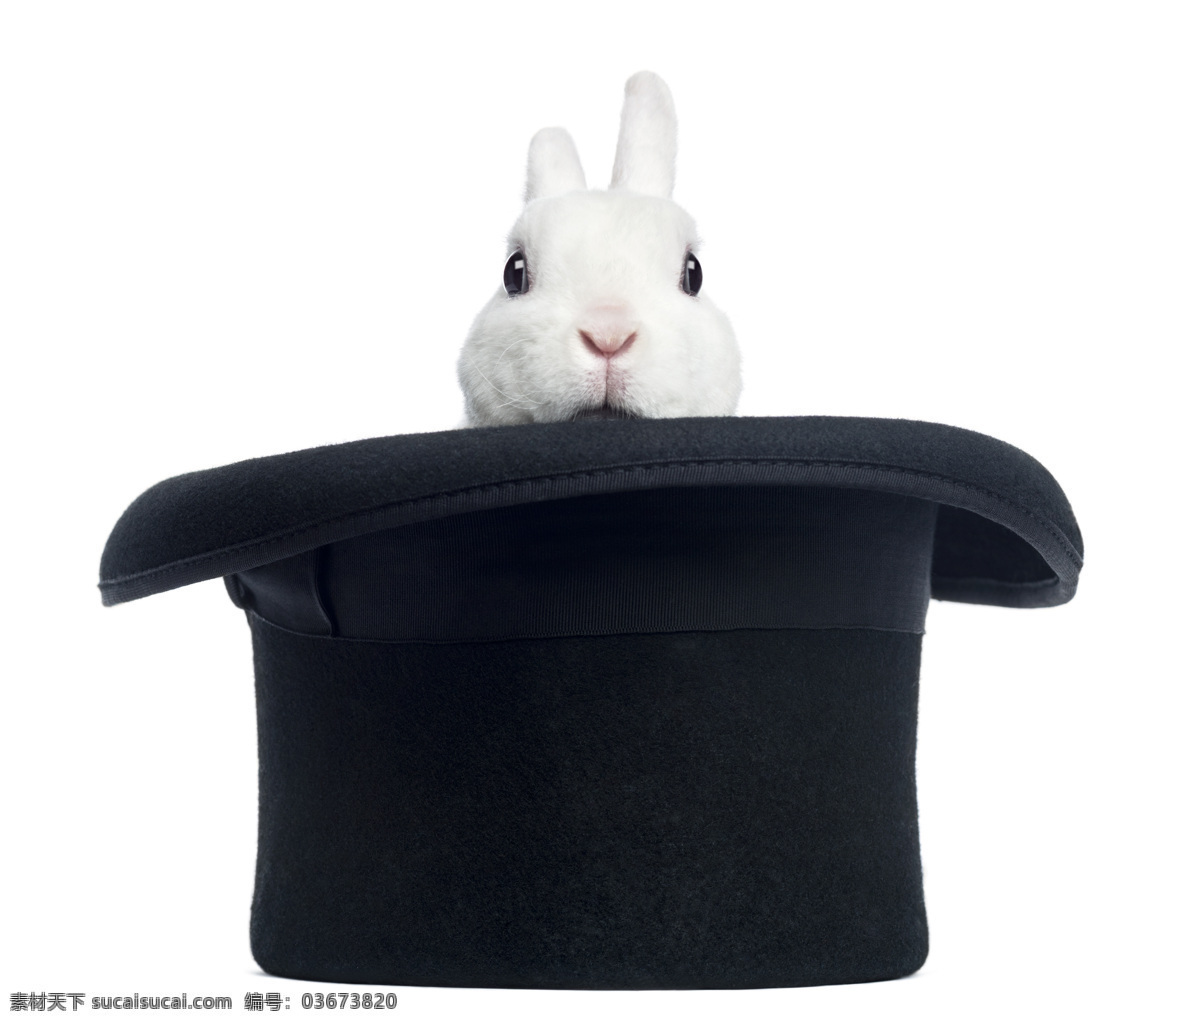 魔法师 帽子 里 兔子 魔术师 魔法 动物 其他艺术 文化艺术